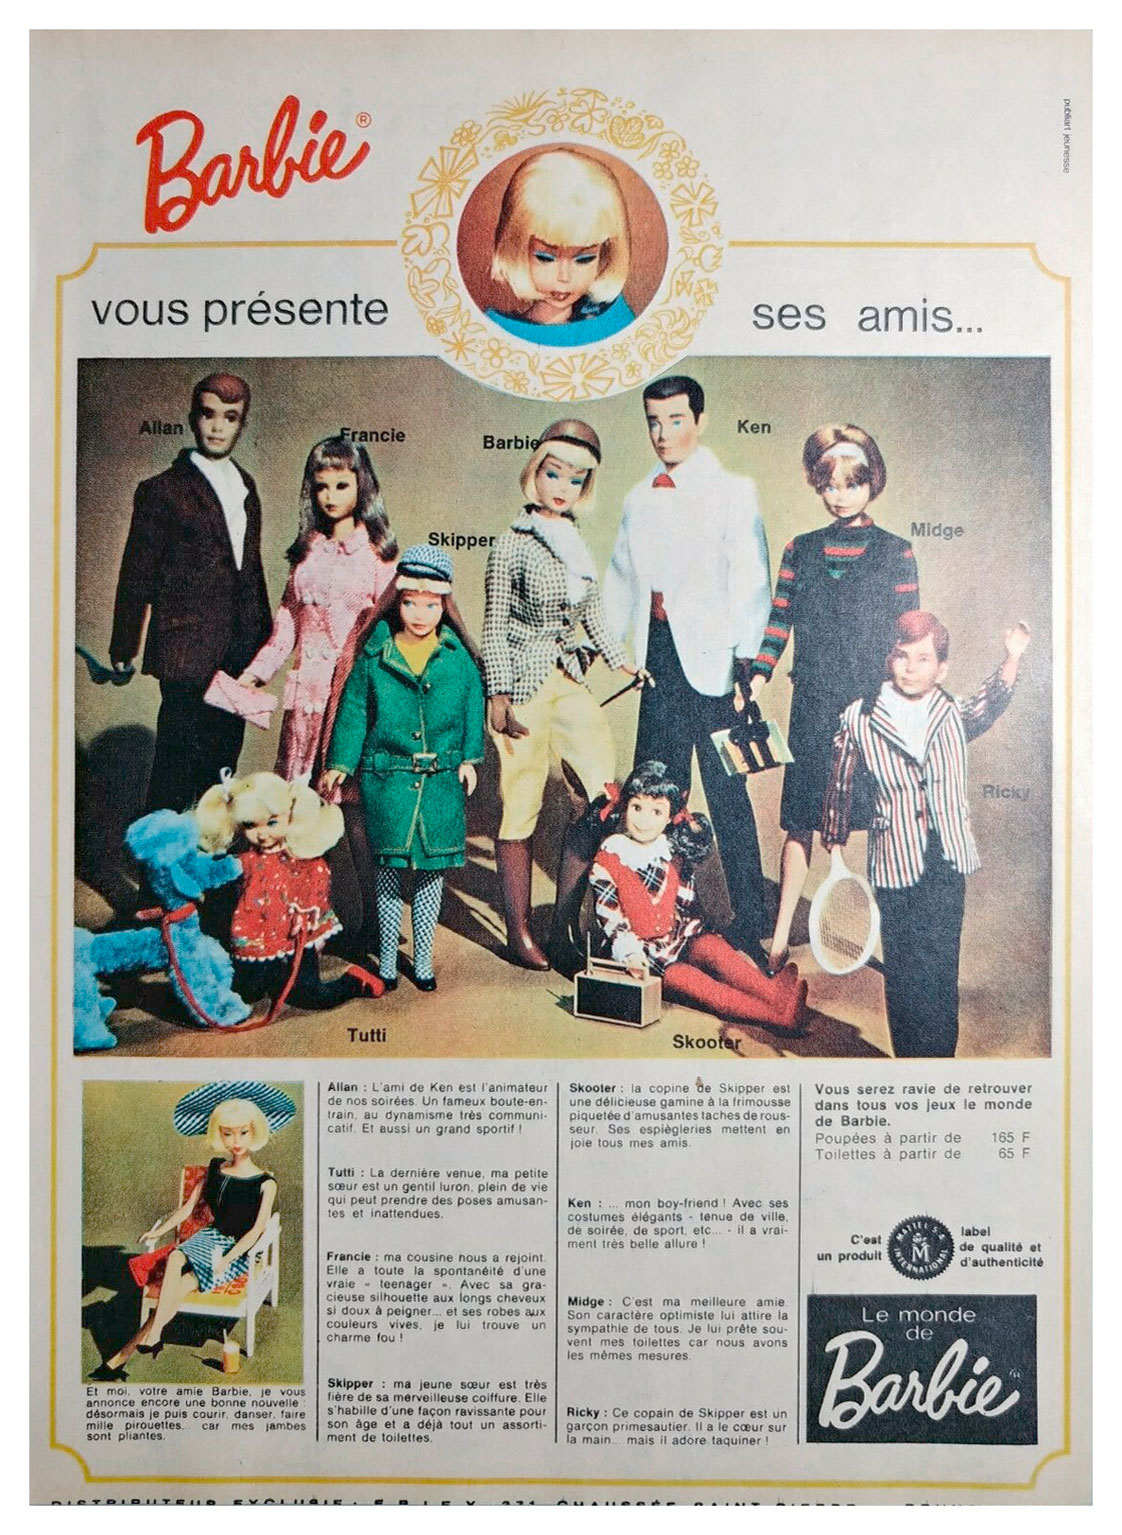 1966 Belgian Barbie advertisement